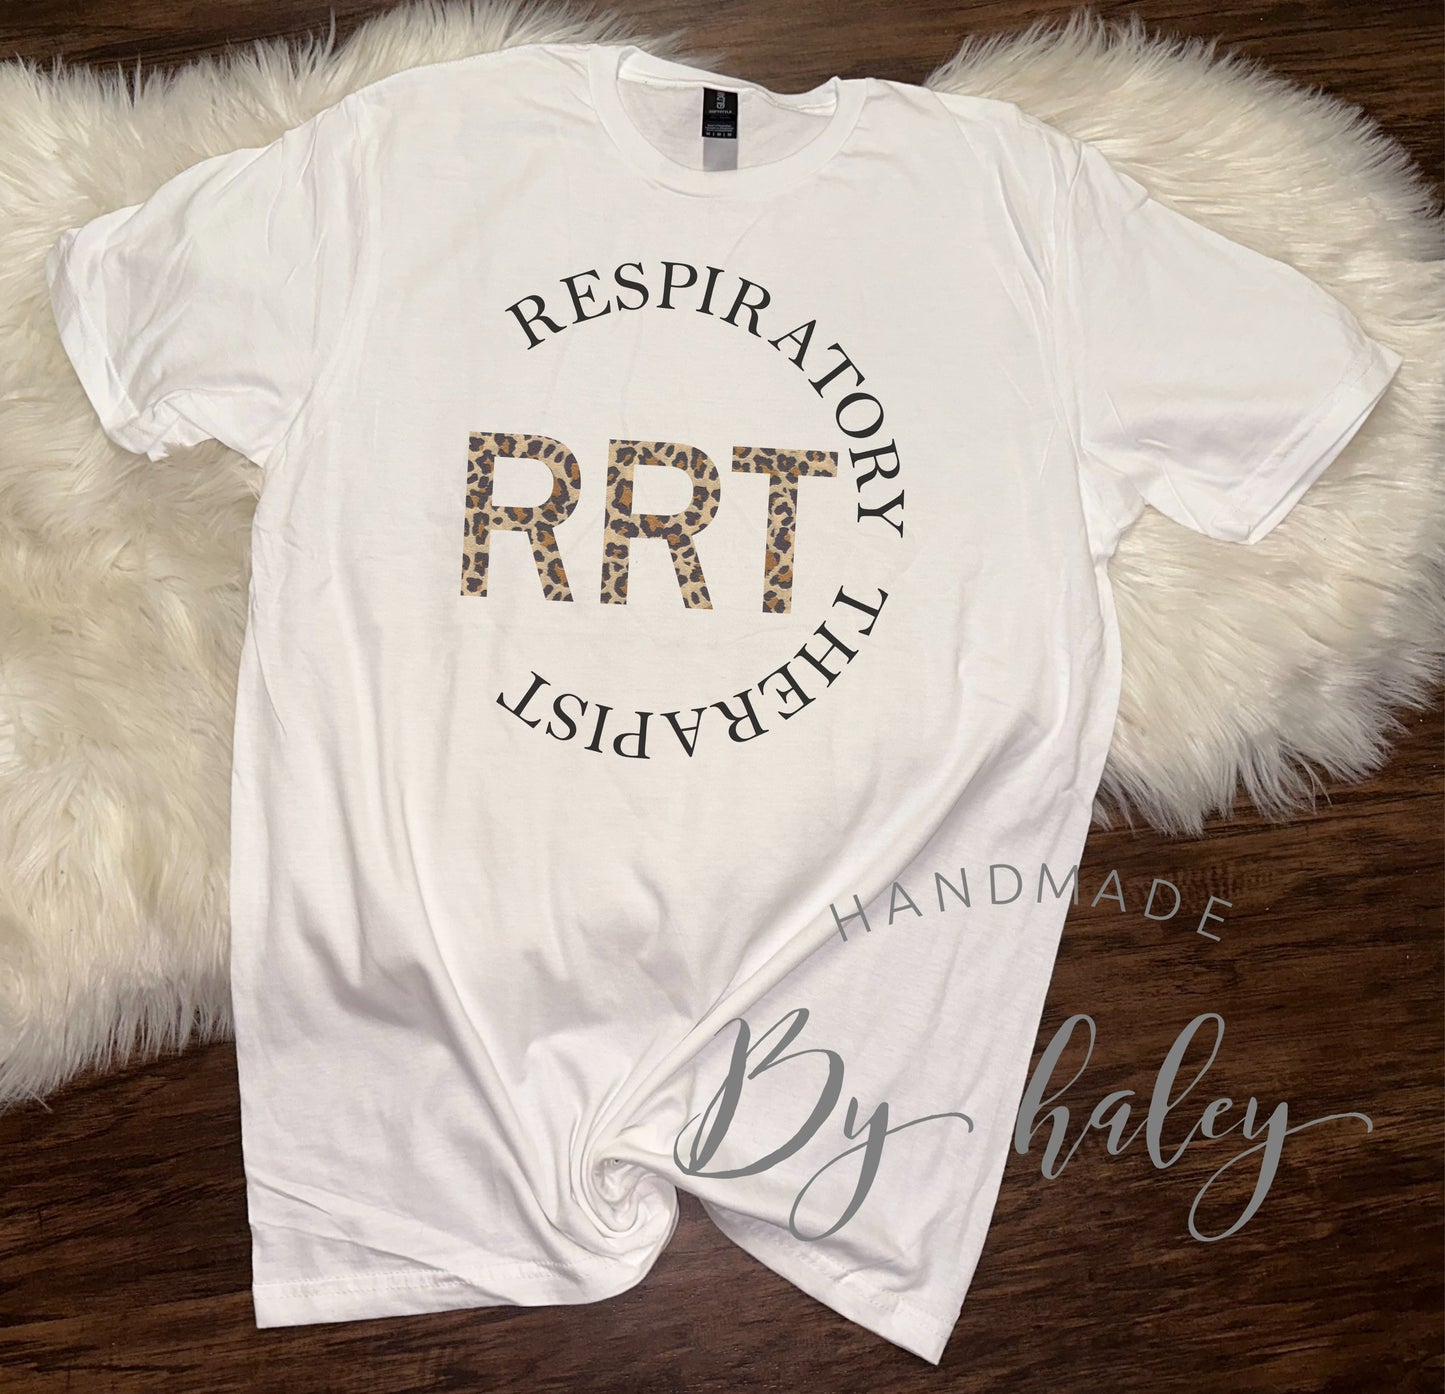 Respiratory Therapist T-Shirt